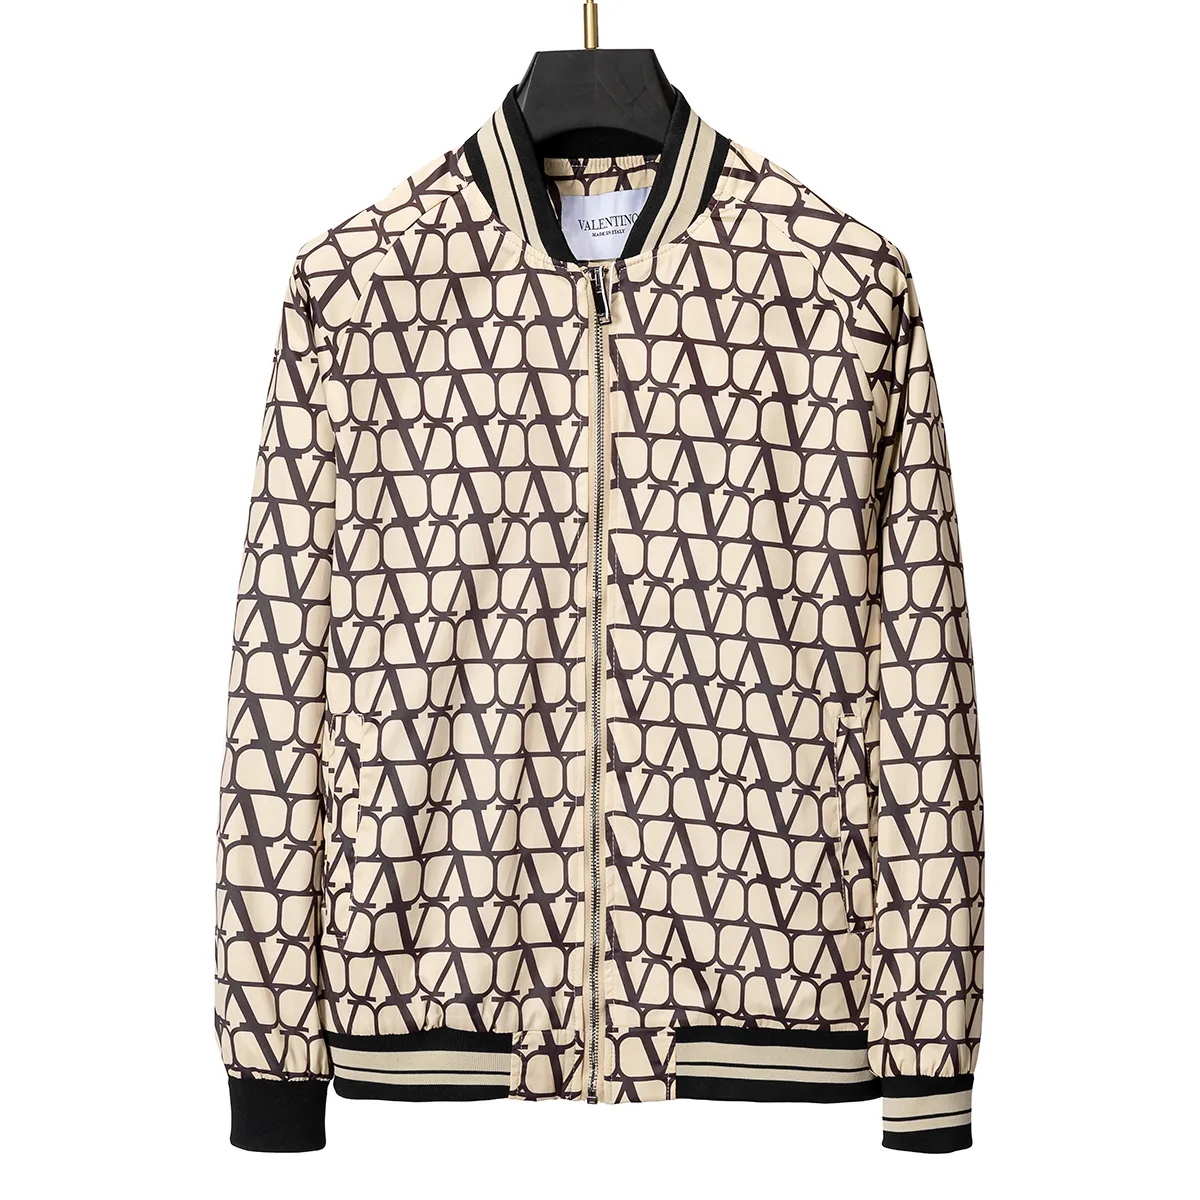 Designer jaqueta beisebol varsity jaqueta mens jaquetas carta costura bordado outono e inverno solto causal outwear casacos #011